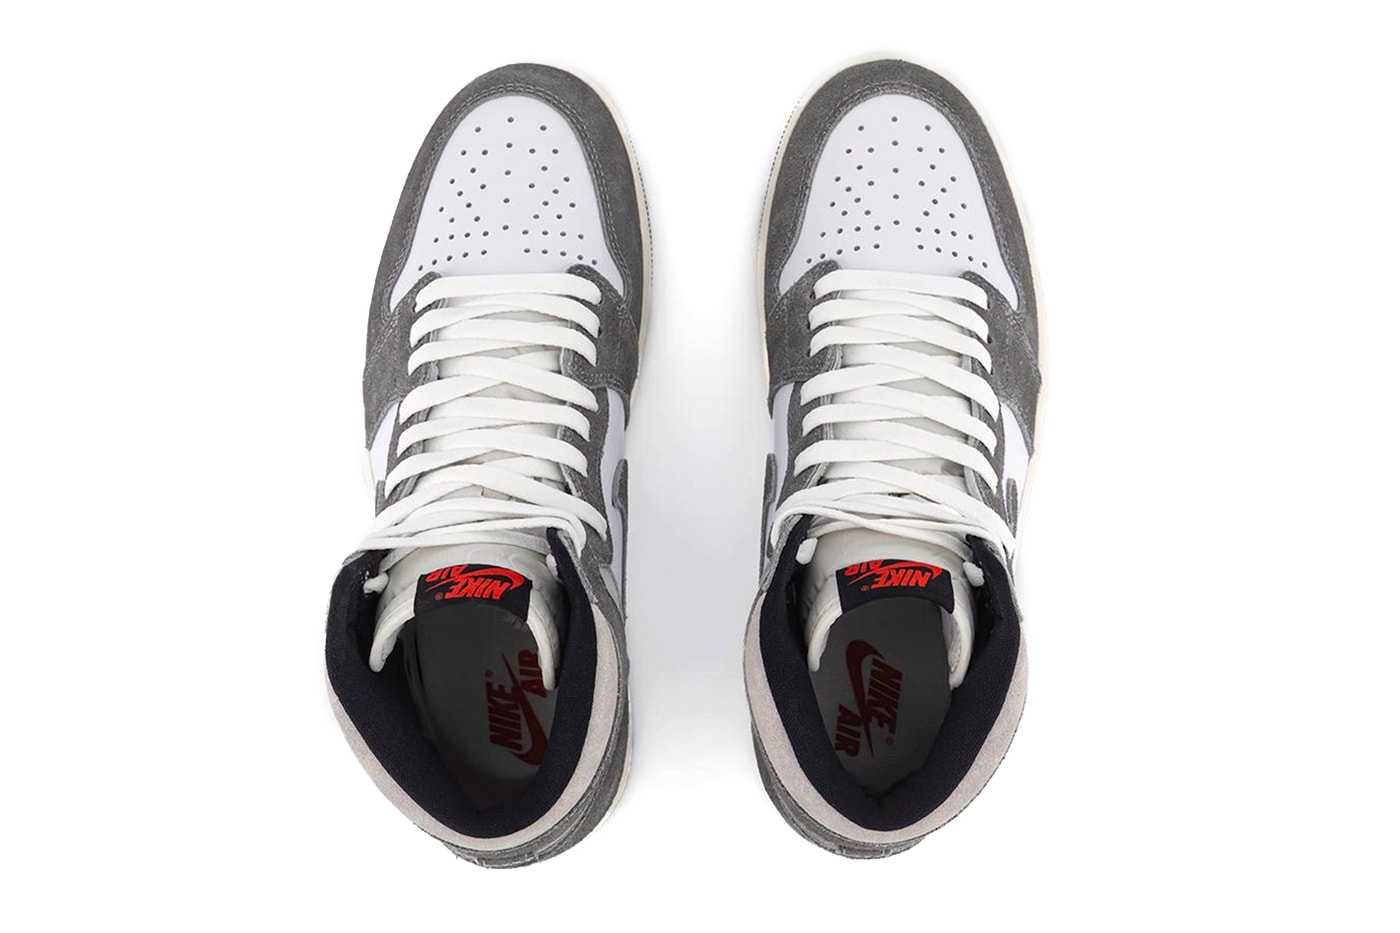 Nike Air Jordan 1 Retro High OG *Washed Heritage* » Buy online now!